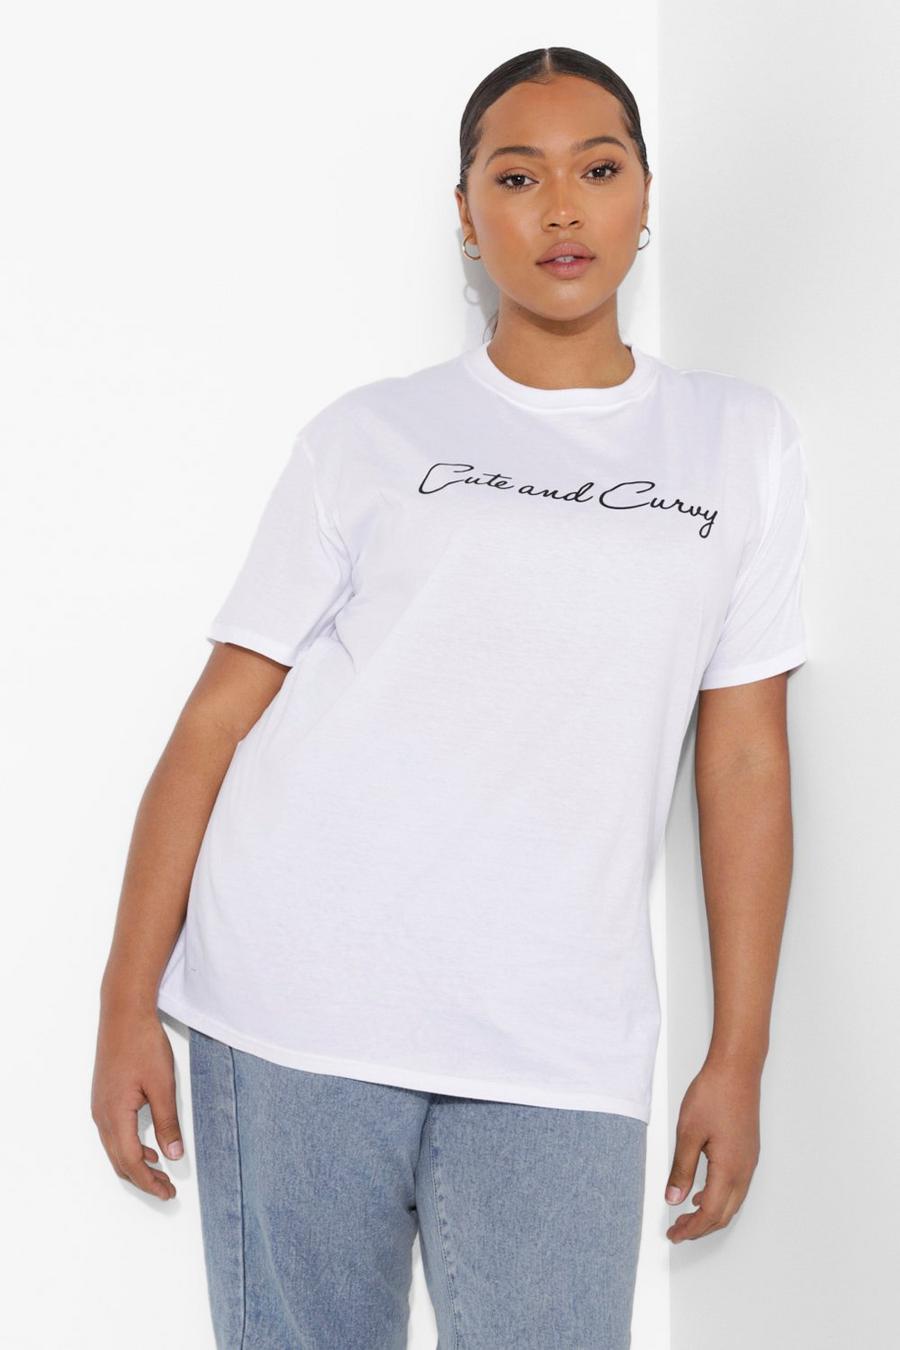 Plus T-Shirt mit Cute und Curvy Slogan, Weiß white